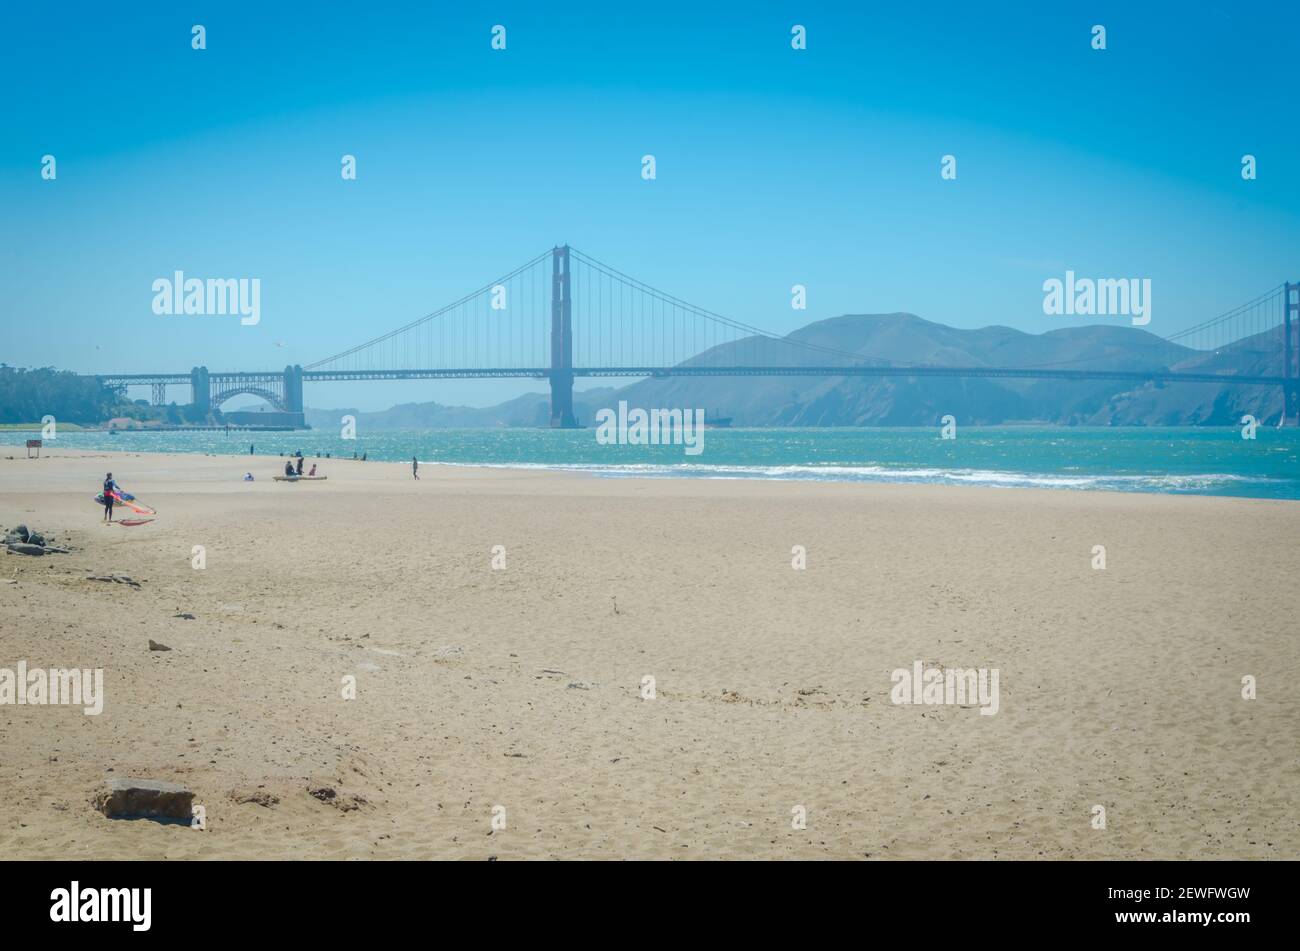 San Francisco, CA, USA - 24. Juni 2015: Sonniger Tag am Pier und Marina in San Francisco City. Die Golden Gate Bridge ist sichtbar im Hintergrund und al Stockfoto